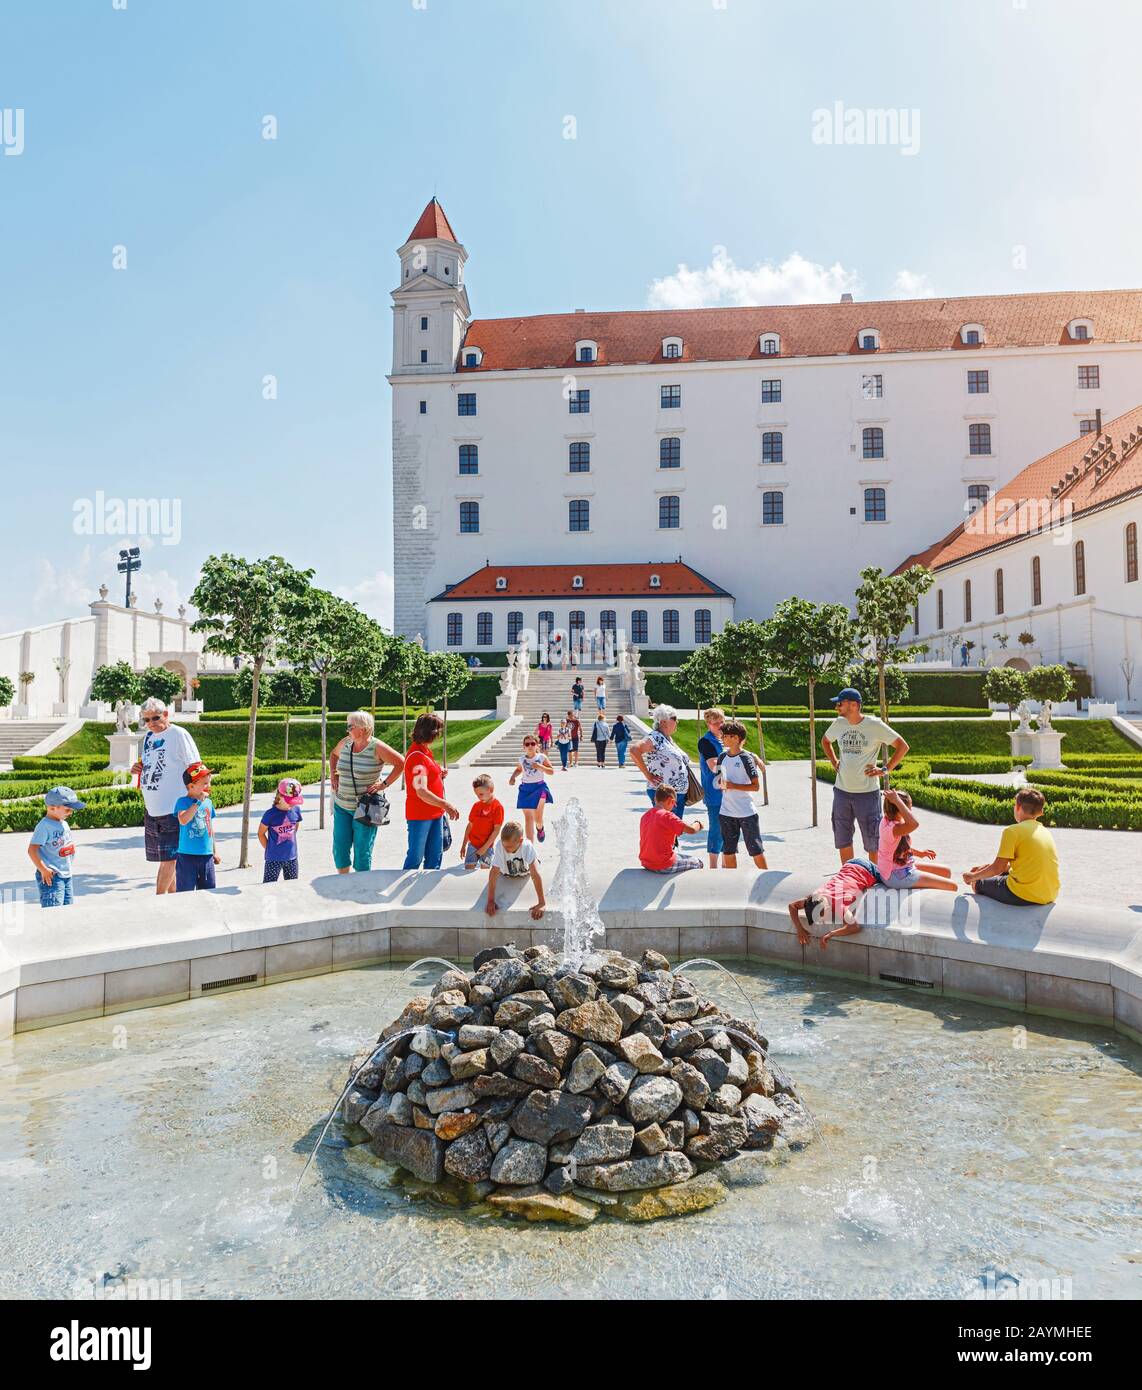 12 MAGGIO 2018, SLOVACCHIA, BRATISLAVA: I turisti si rinfrescano vicino alla fontana nel famoso giardino barocco dietro il complesso del castello Foto Stock